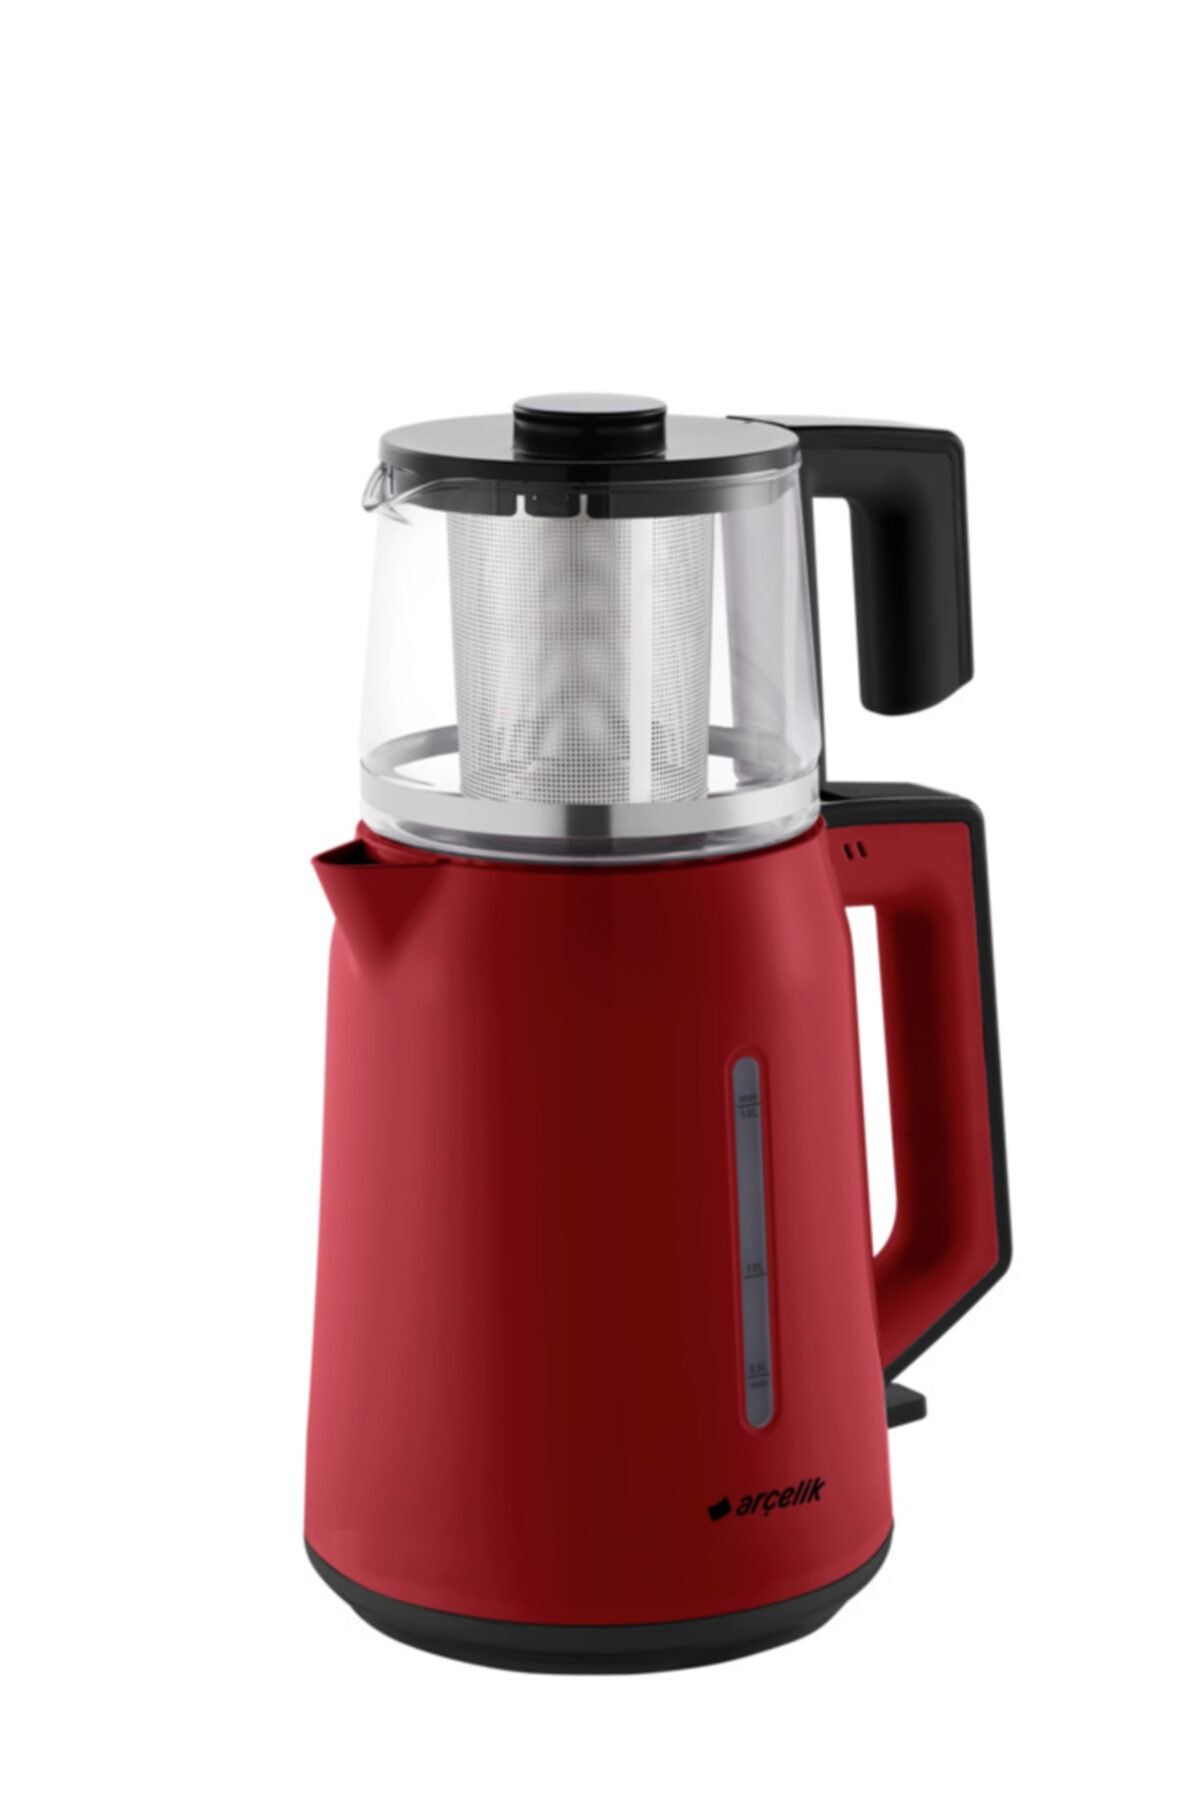 Arçelik Çay Makinası Cam Demlikli Kırmızı Cm 3940k